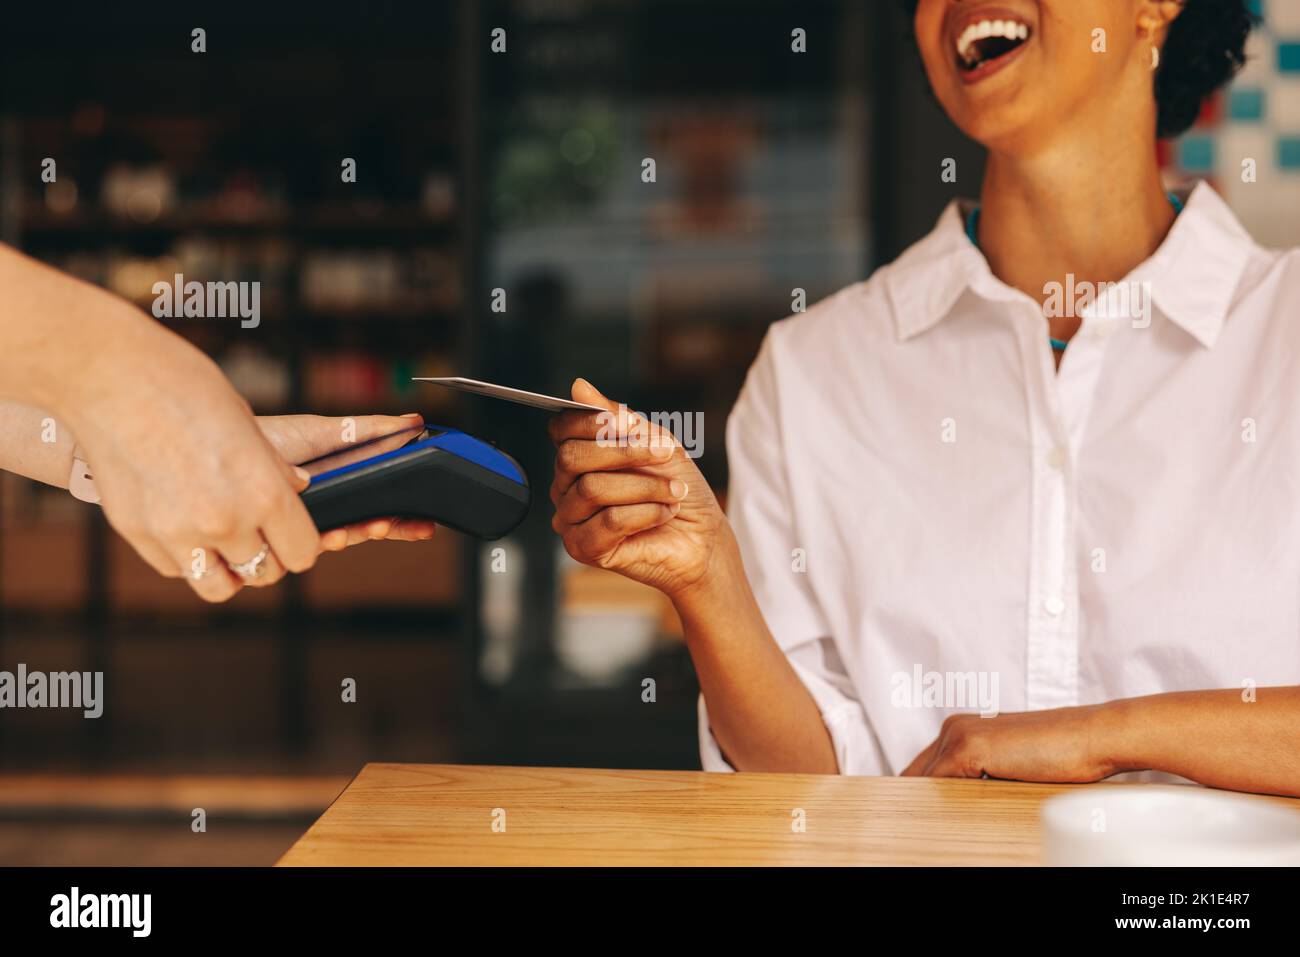 Une cliente heureuse scanne sa carte de crédit sur une machine à cartes pour payer sa facture dans un café. Femme joyeuse faisant un transactio sans cashless et sans contact Banque D'Images